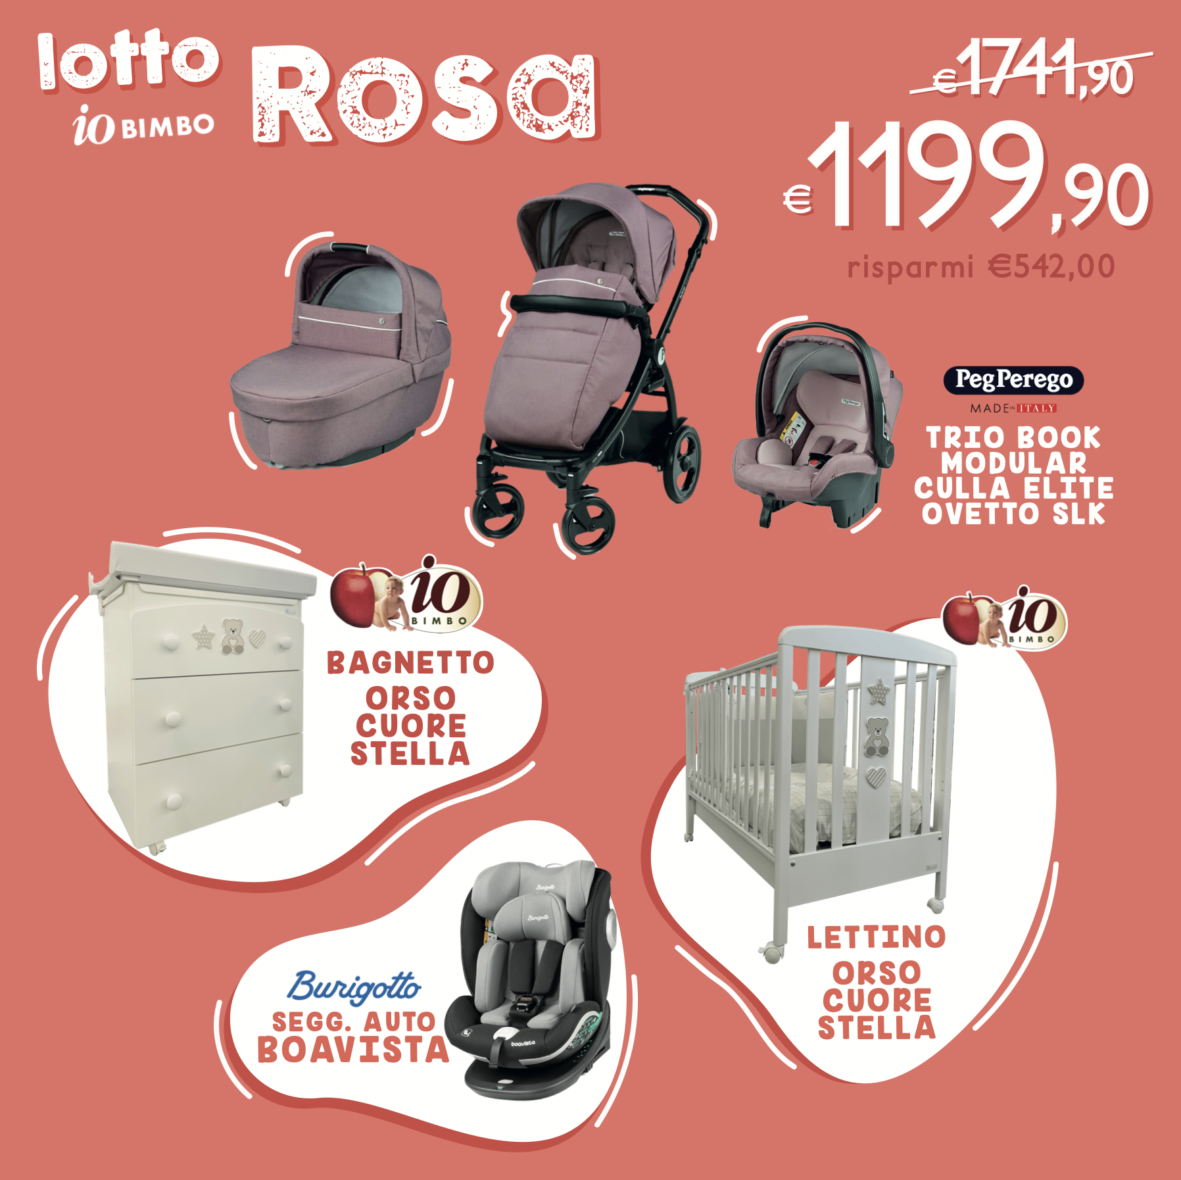 Lotto Rosa